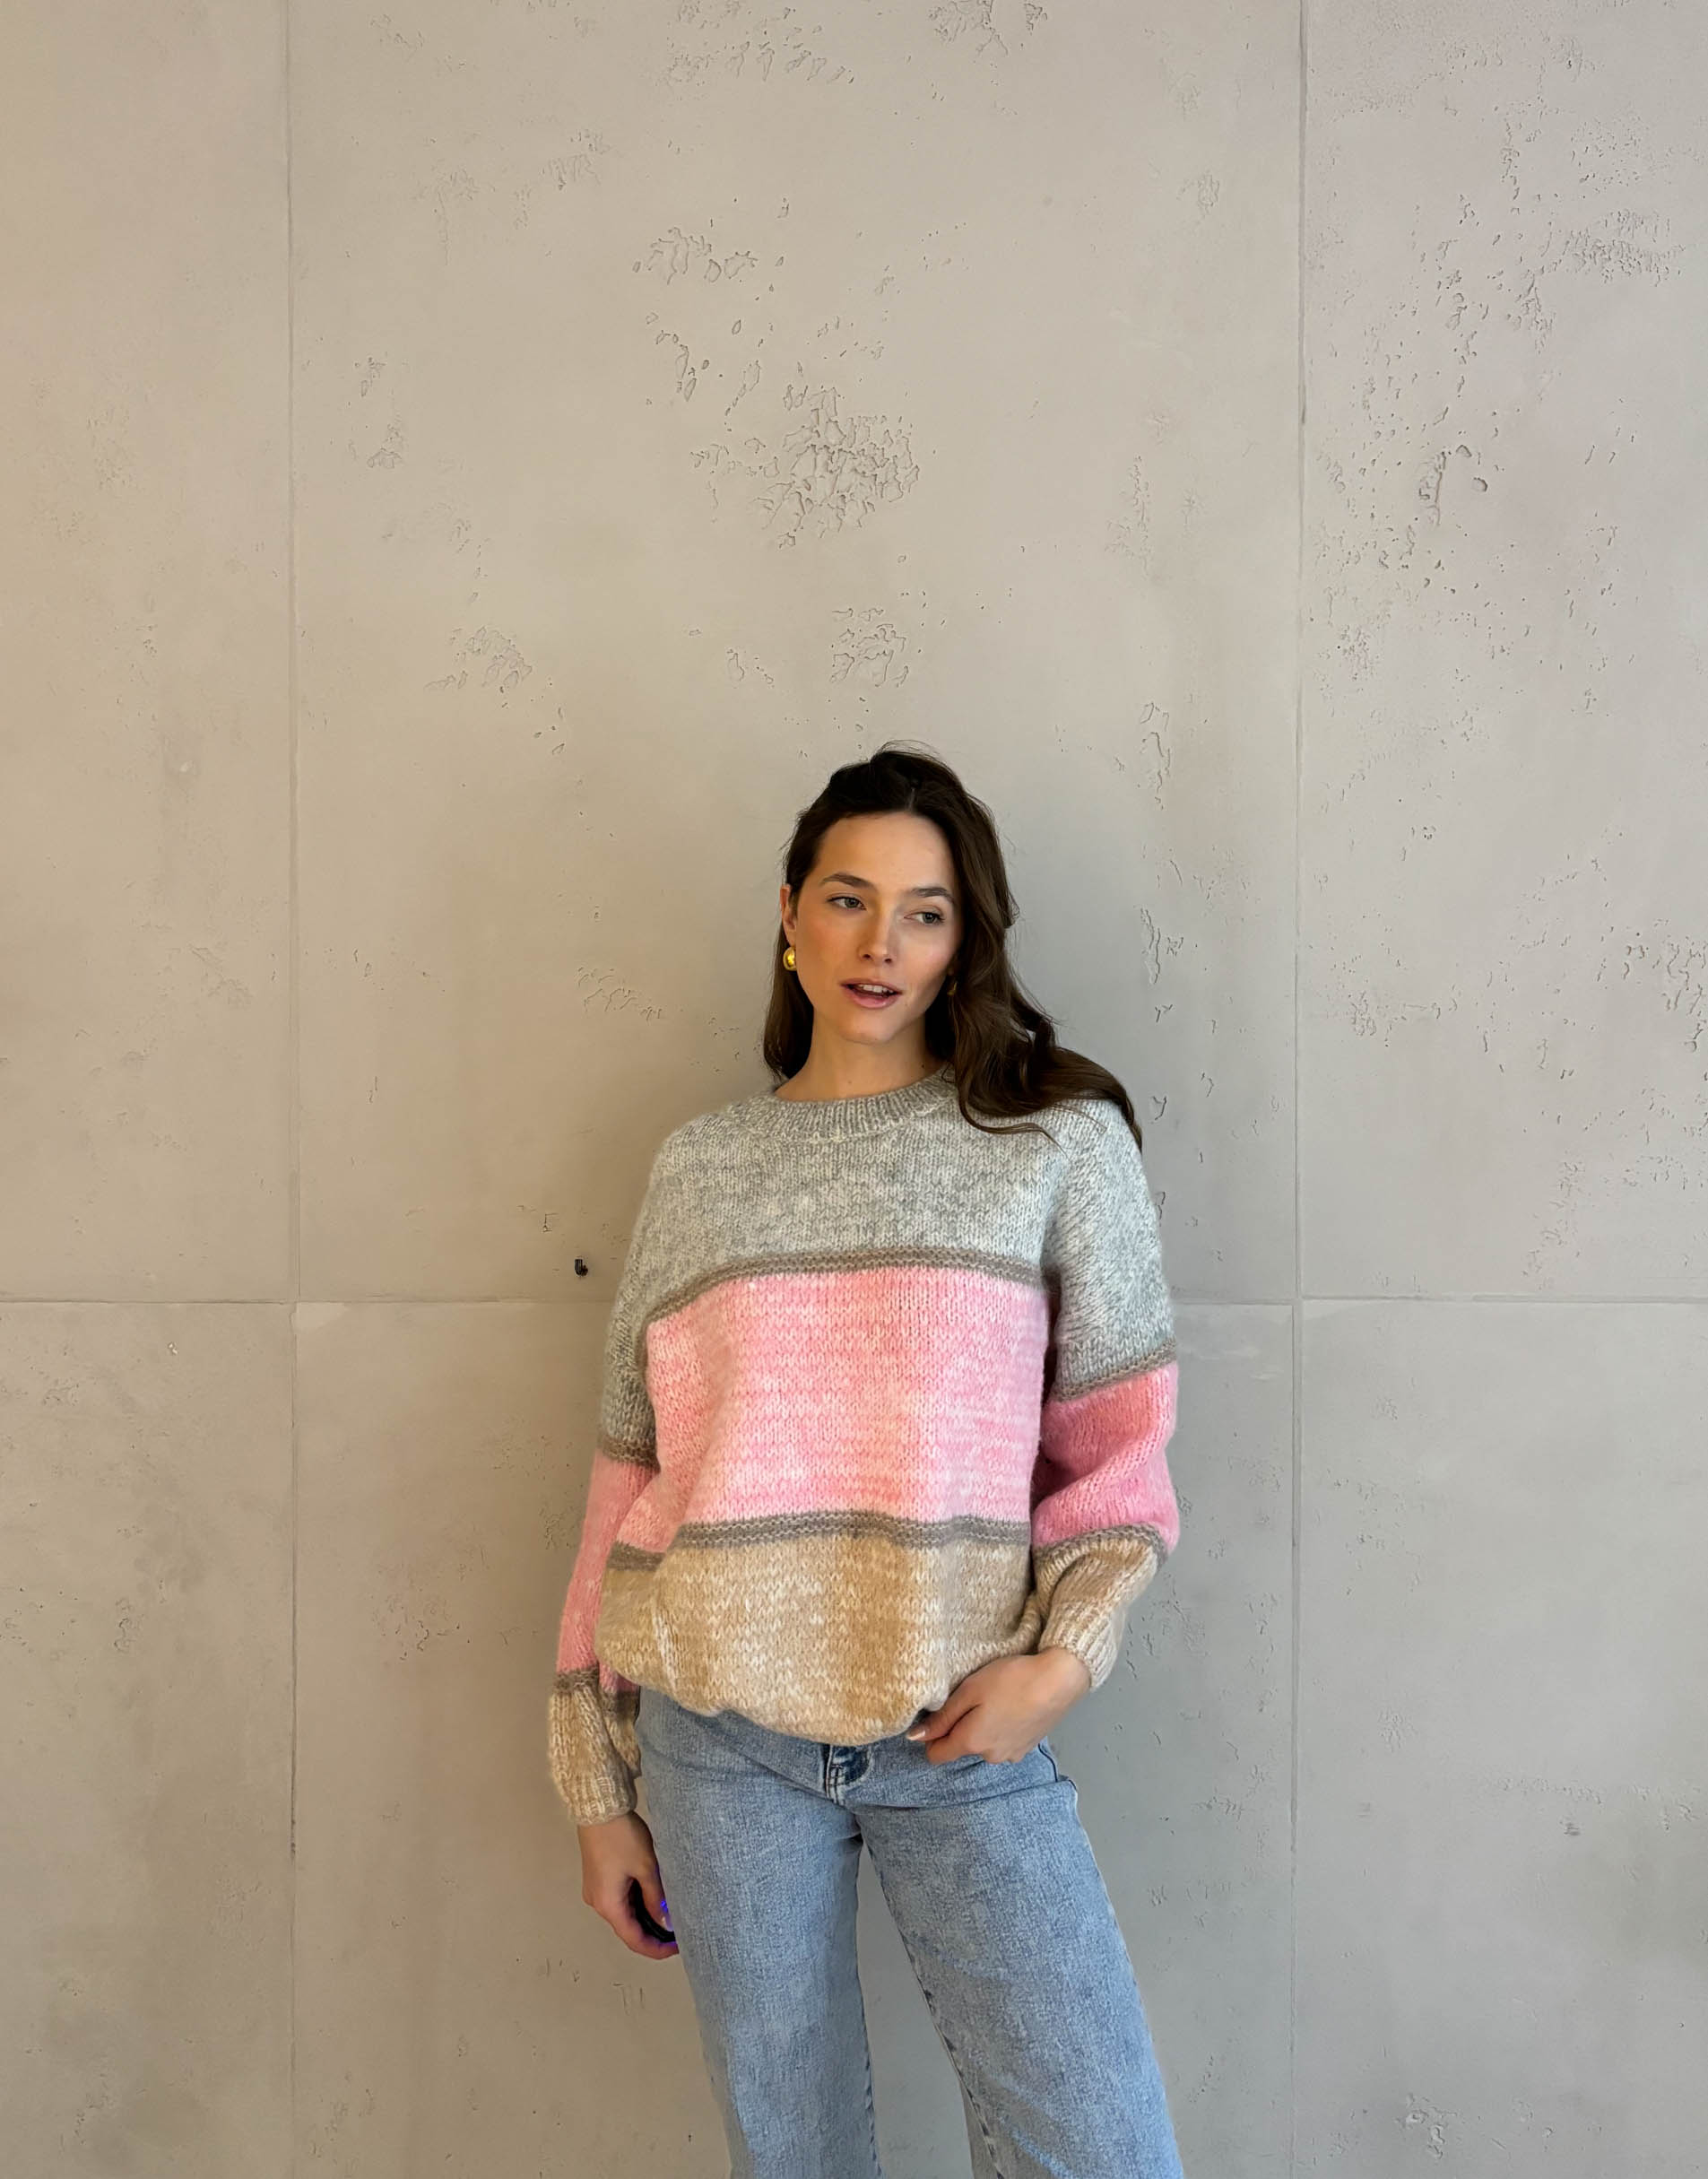 Frau mit brauen Haaren trägt Pullover in Colorblocking Design